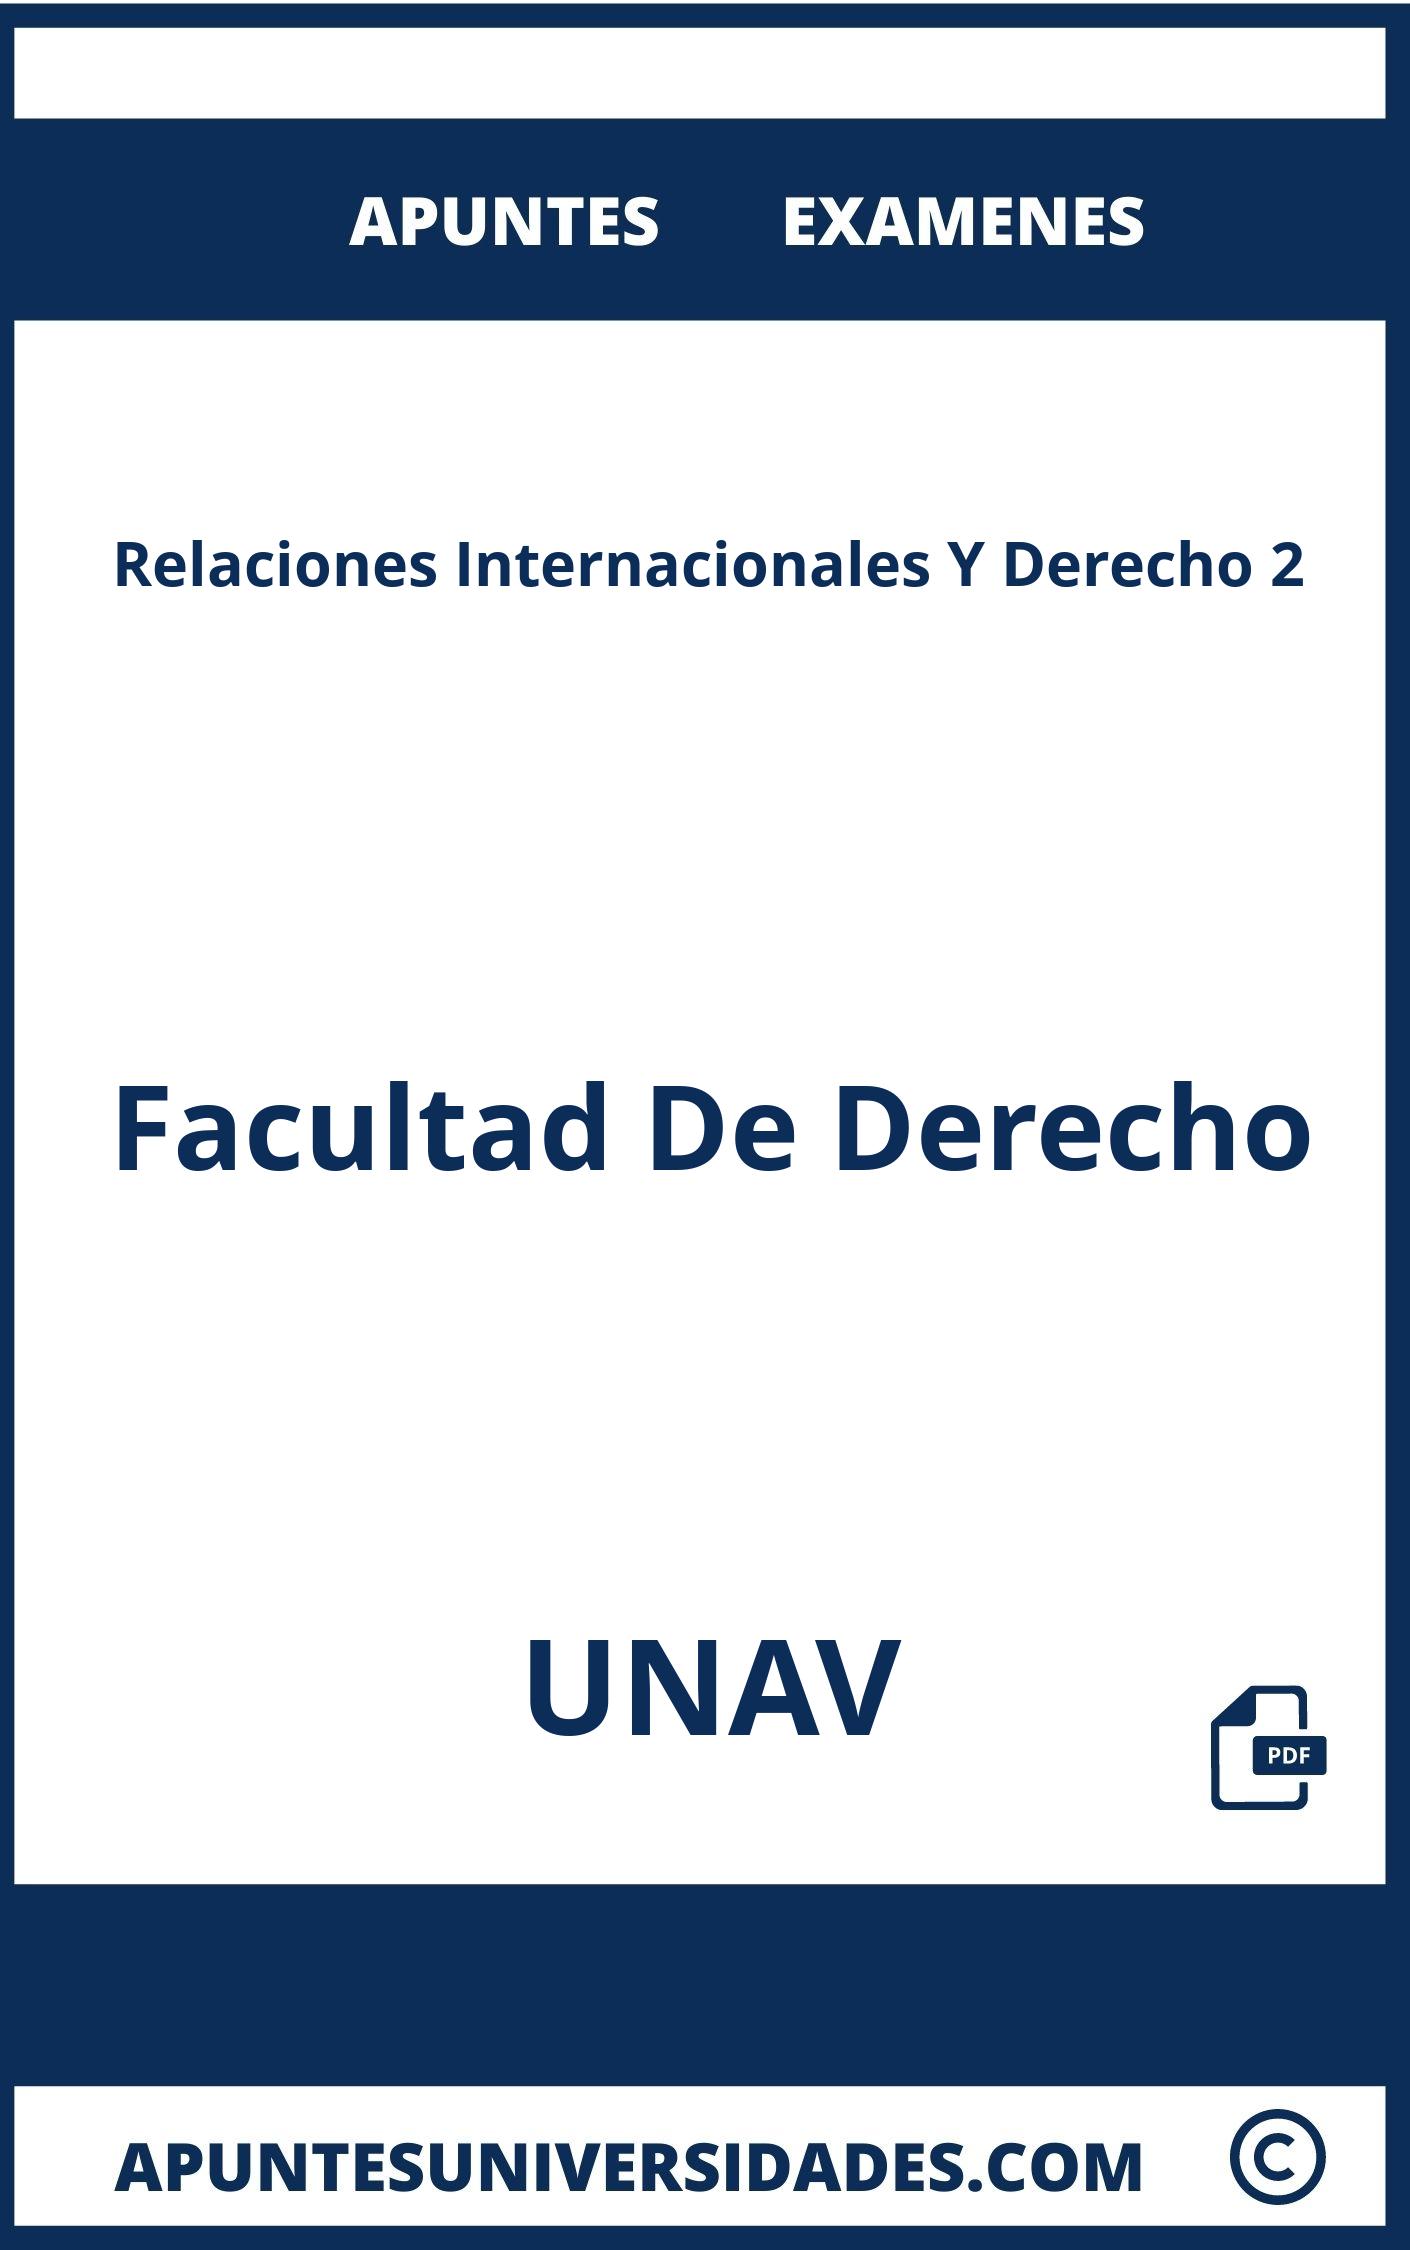 Relaciones Internacionales Y Derecho 2 UNAV Examenes Apuntes